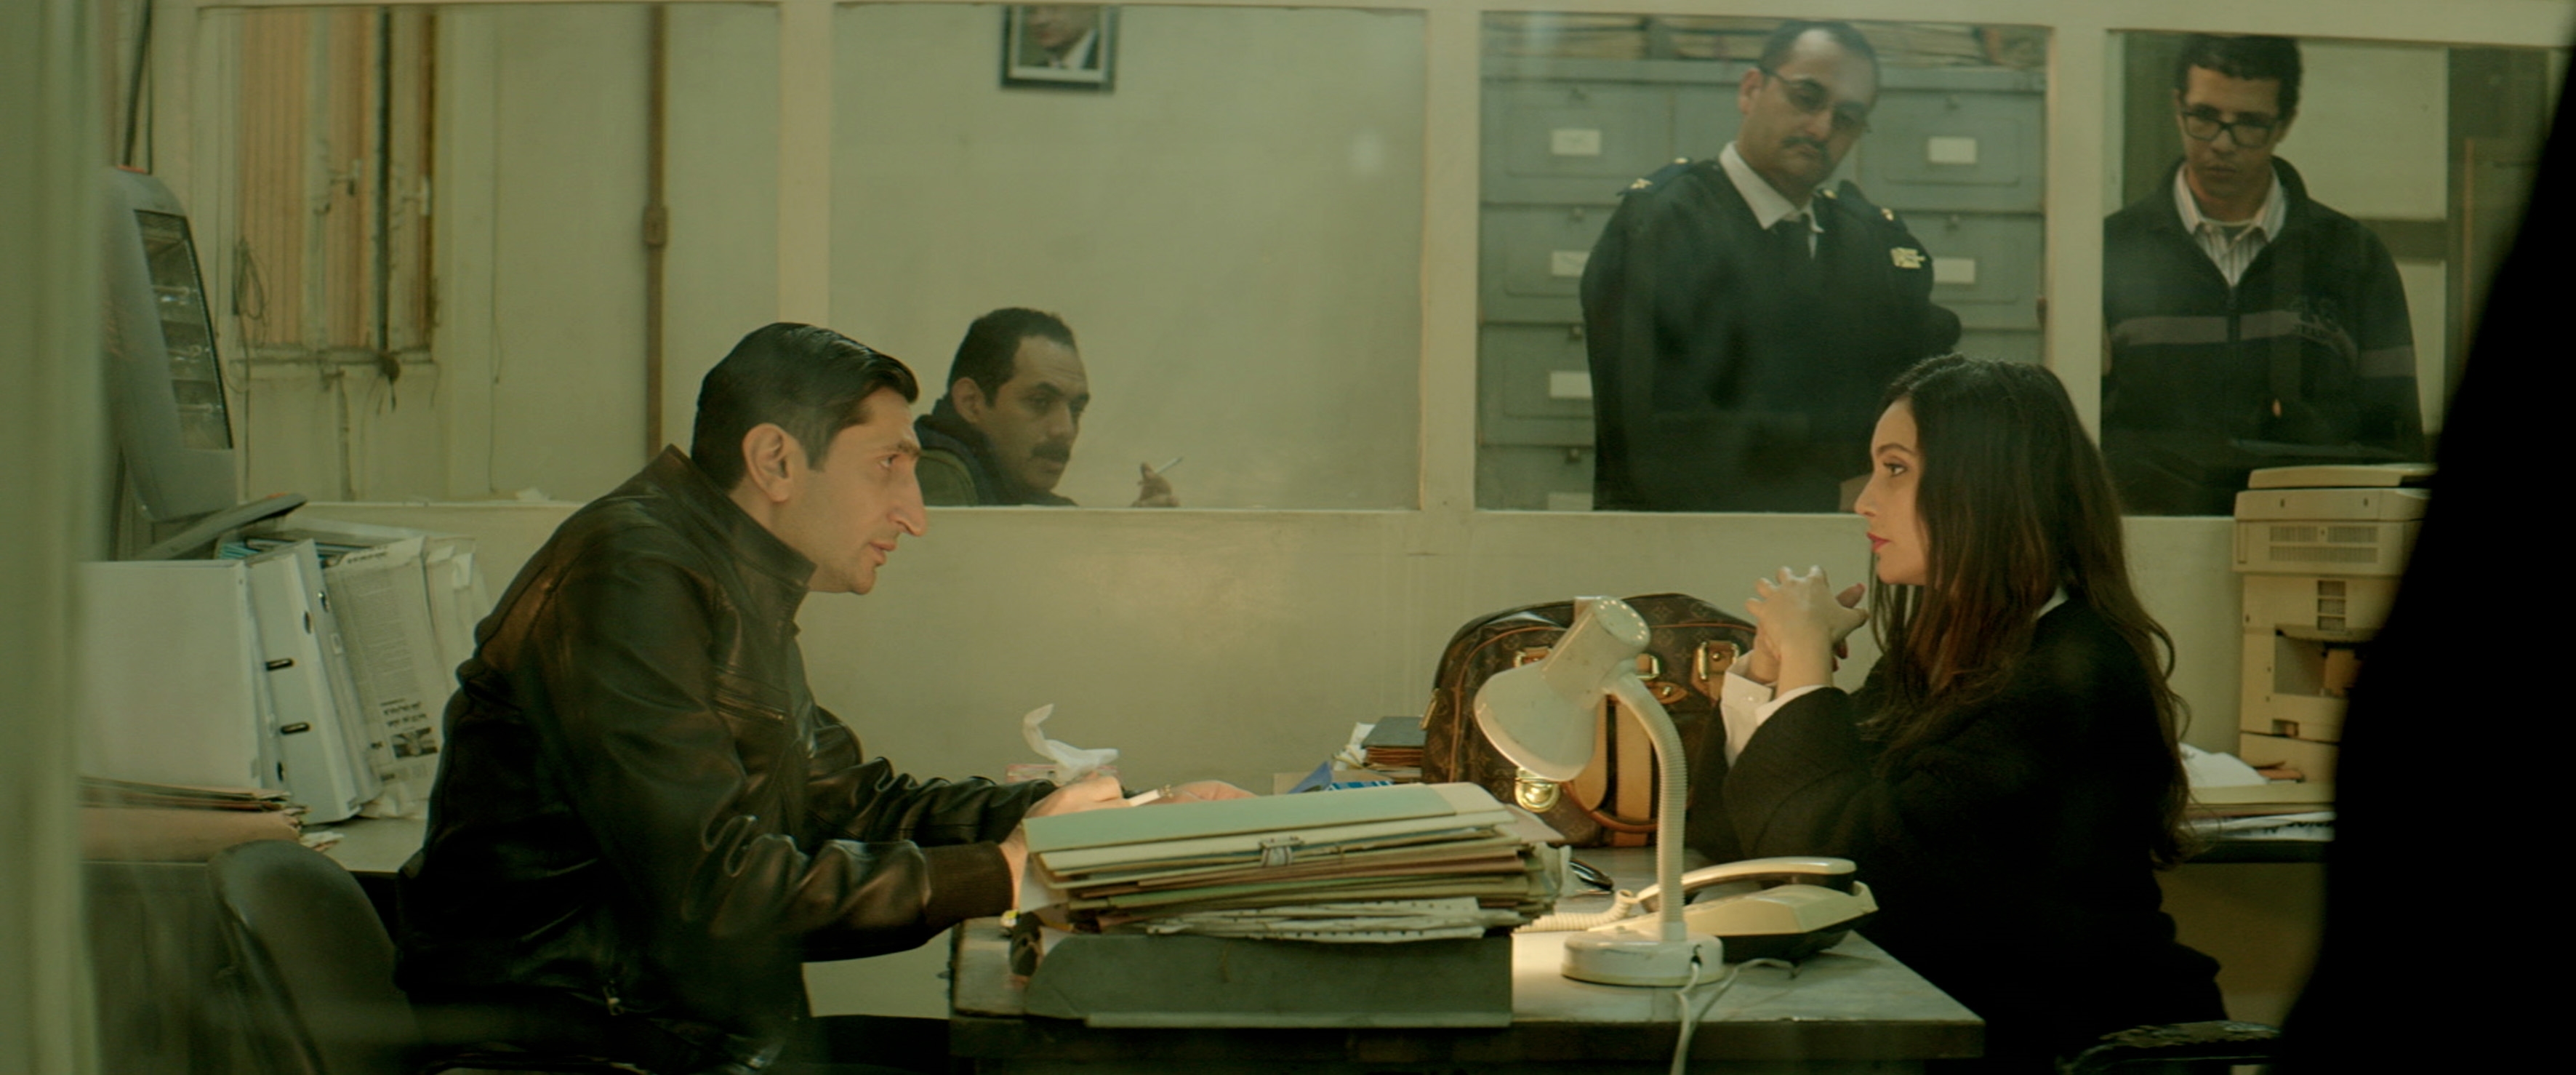 Image du film Le Caire confidentiel f1c30573-de5e-4864-bcda-f50097c5c16b